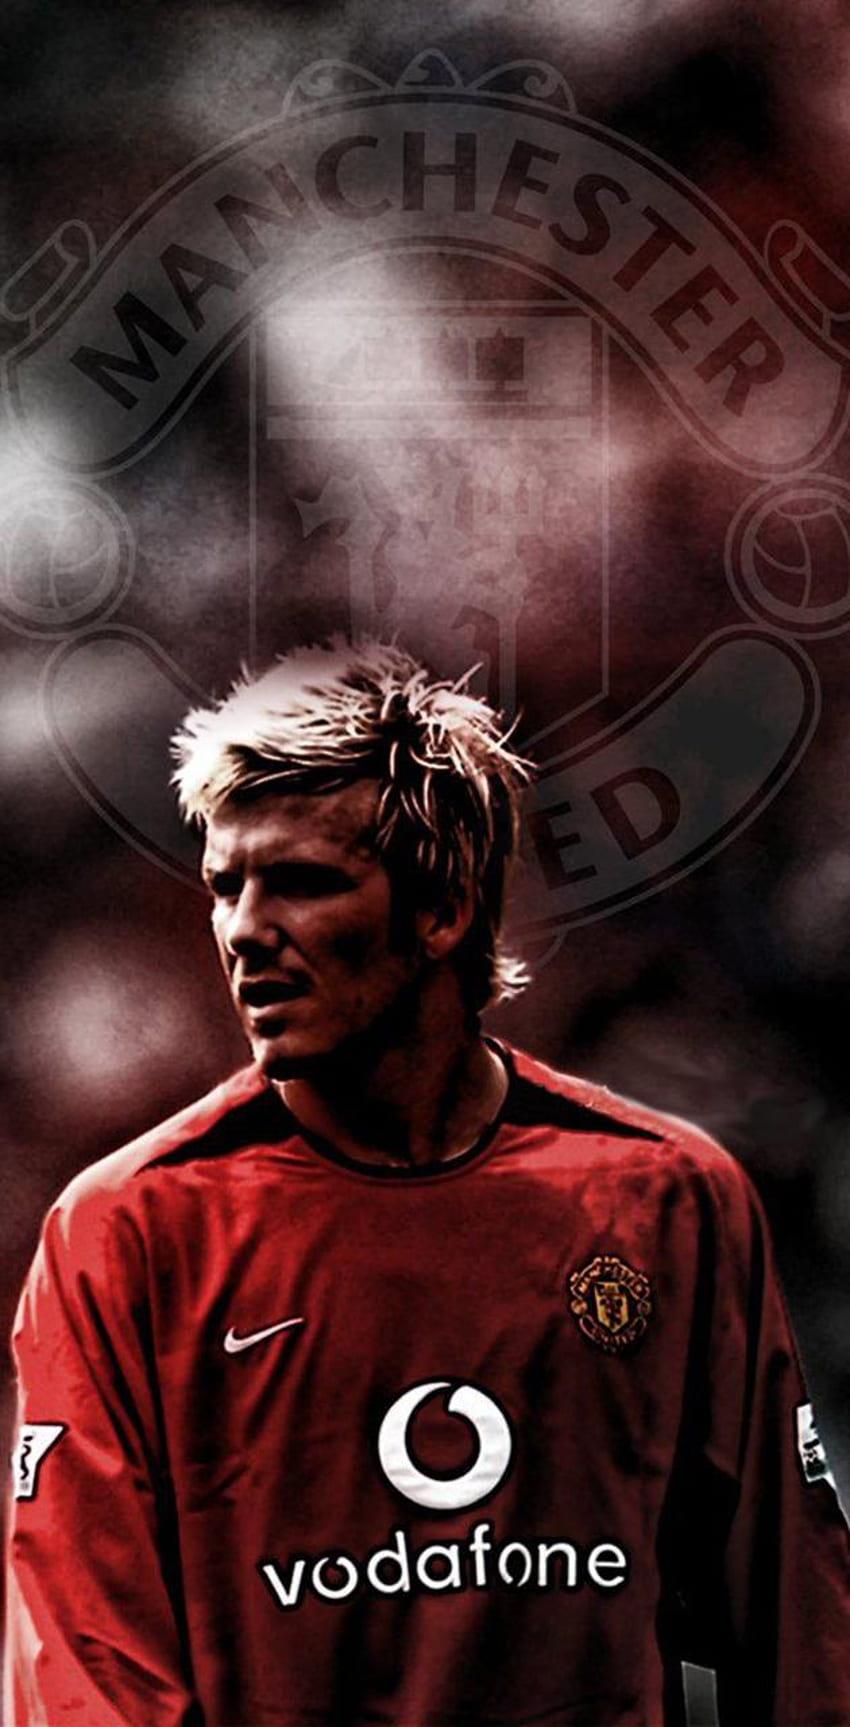 David Beckham Wallpapers - Top 35 Best David Beckham Wallpapers Download